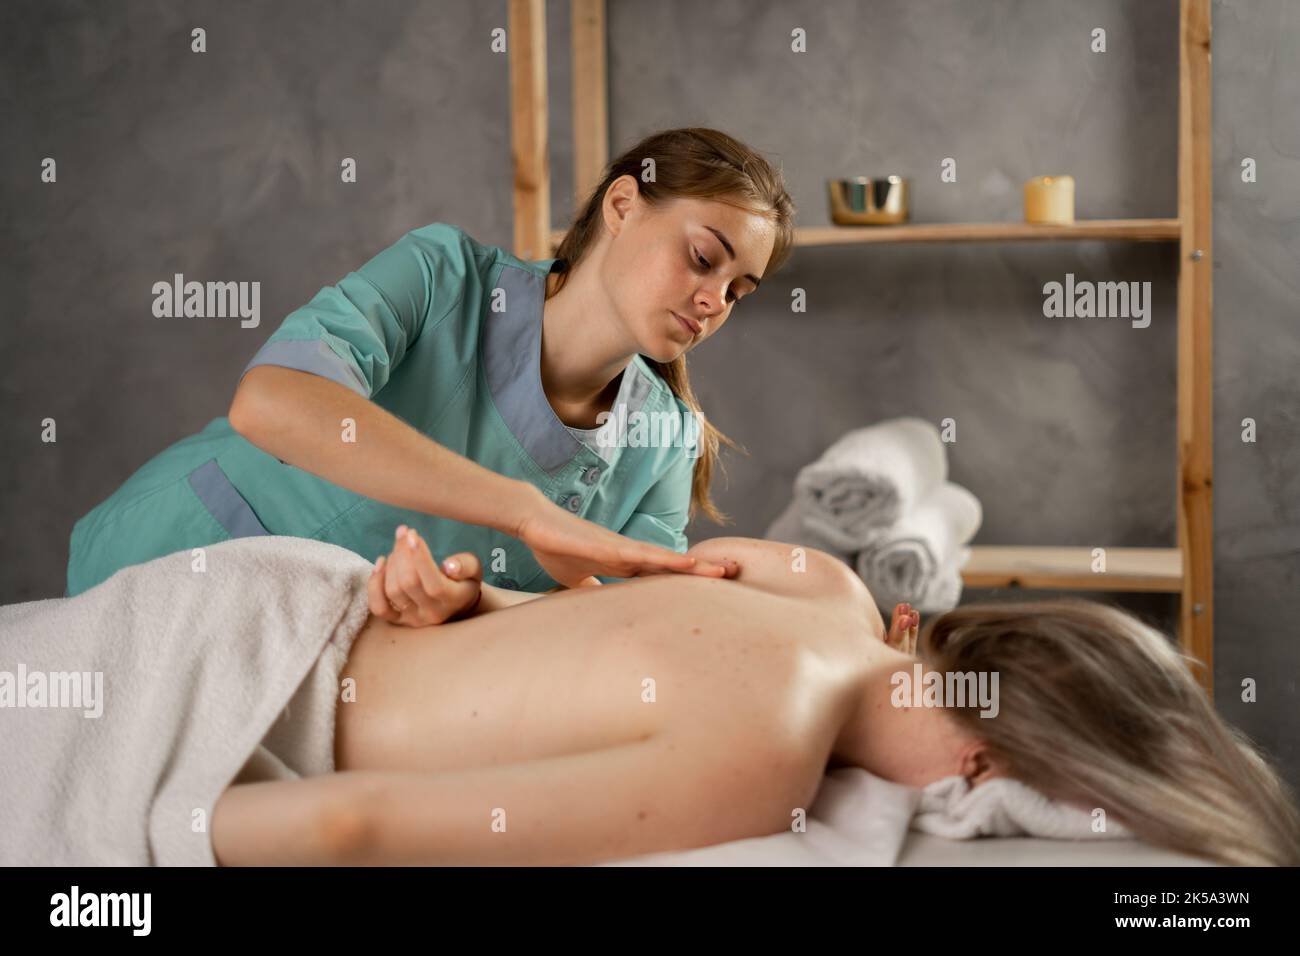 Professionelle Masseurin oder manuelle Therapeutin massiert die Schulter einer jungen Frau und lindert so die Schmerzen. Weibliche Patientin erhält Heilkörpermassage in der Physiotherapie Stockfoto